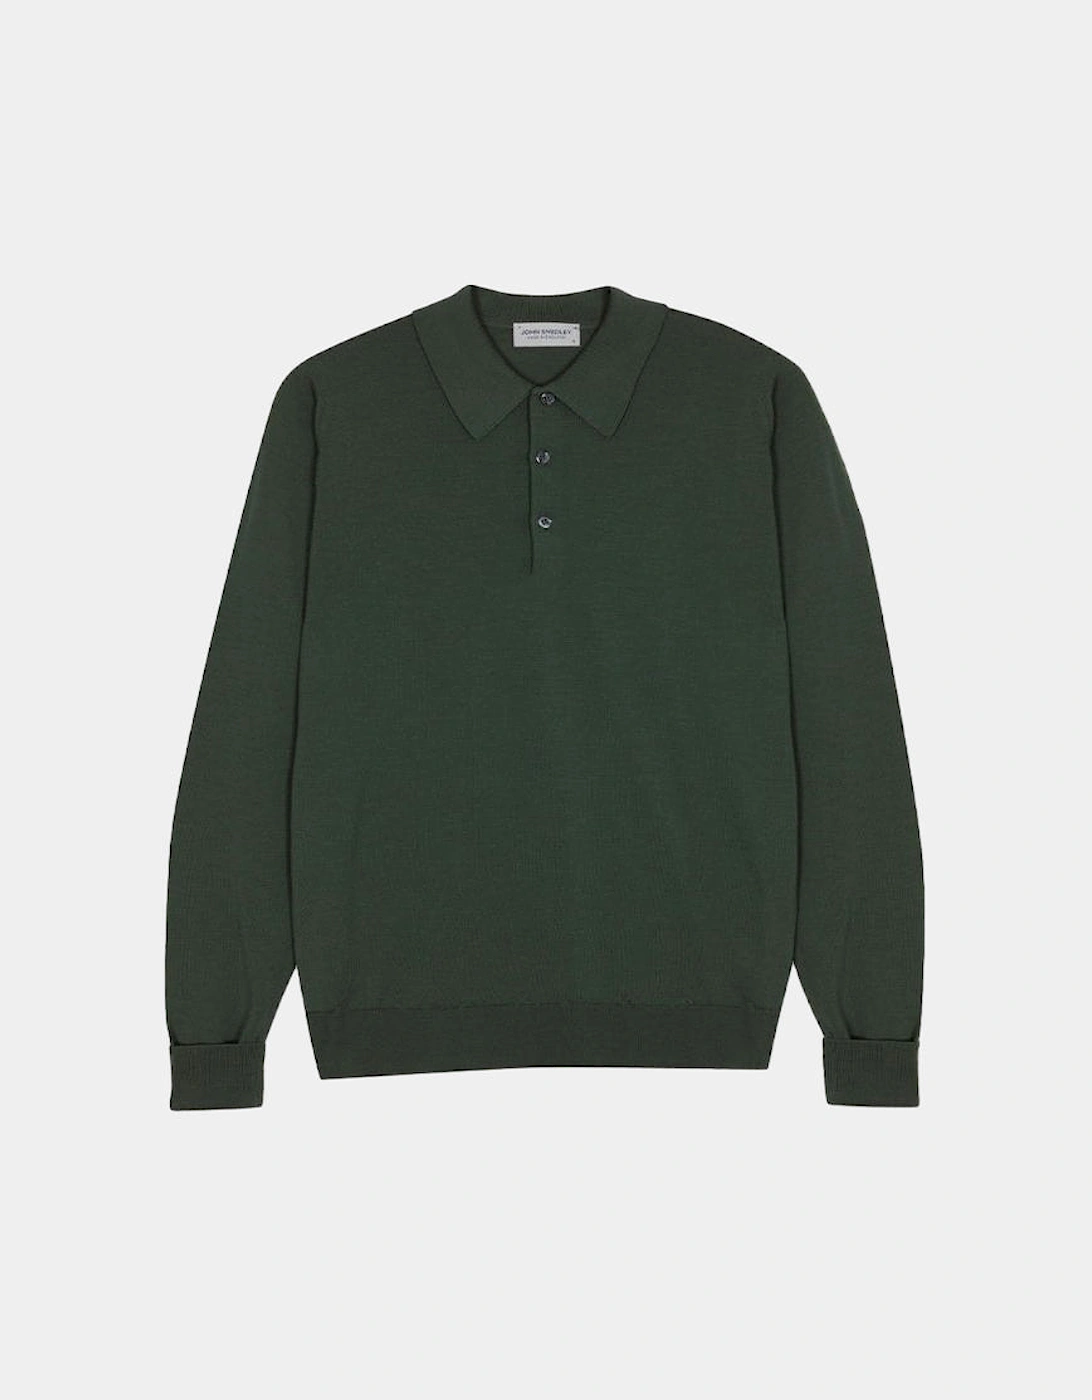 Dorset Shirt - Highland Green, 3 of 2